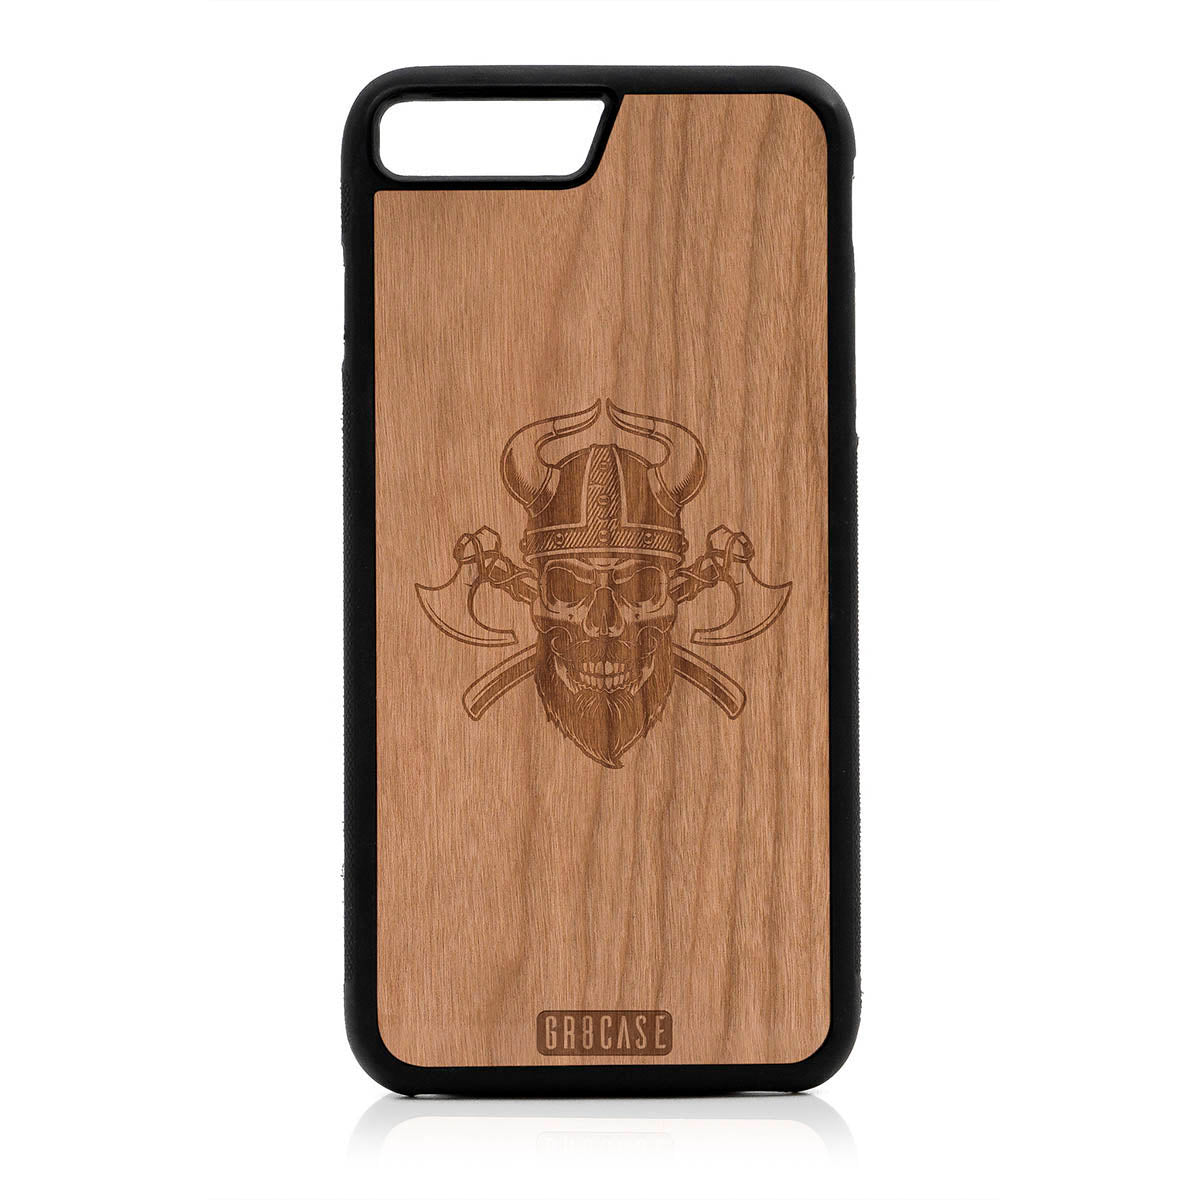 Viking Skull Design Wood Case For iPhone 7 Plus / 8 Plus